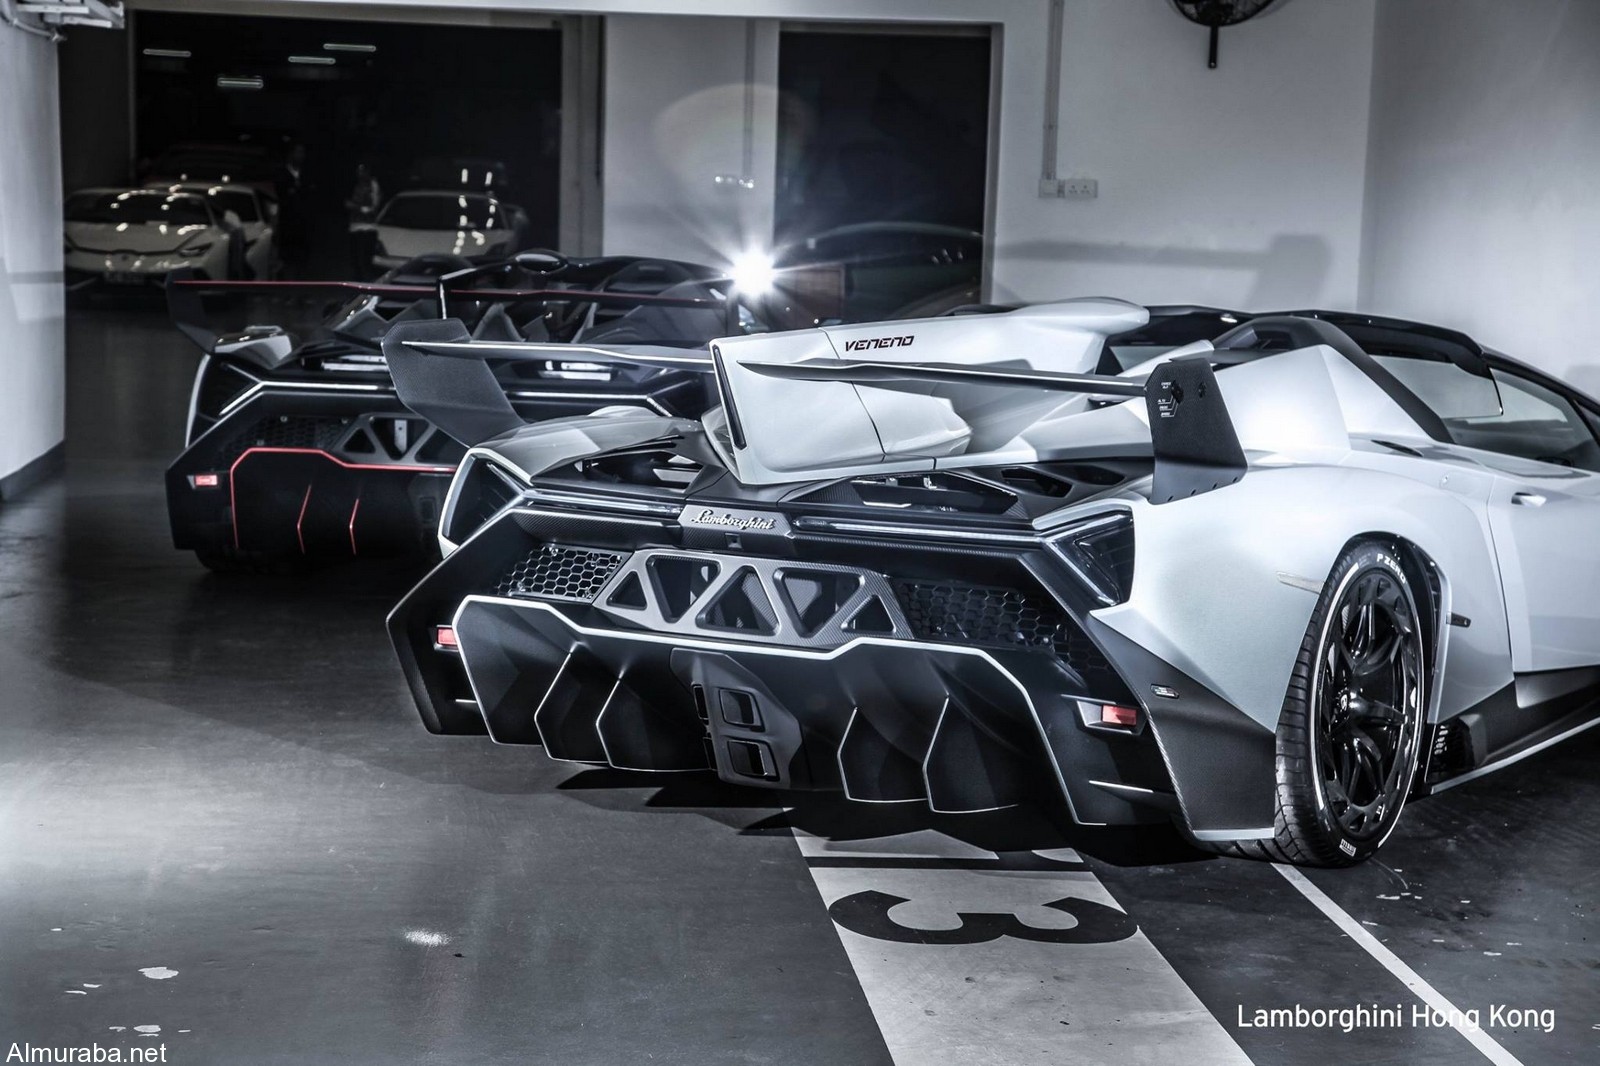 “لامبورجيني” فينينو رودستر تصل هونج كونج Lamborghini